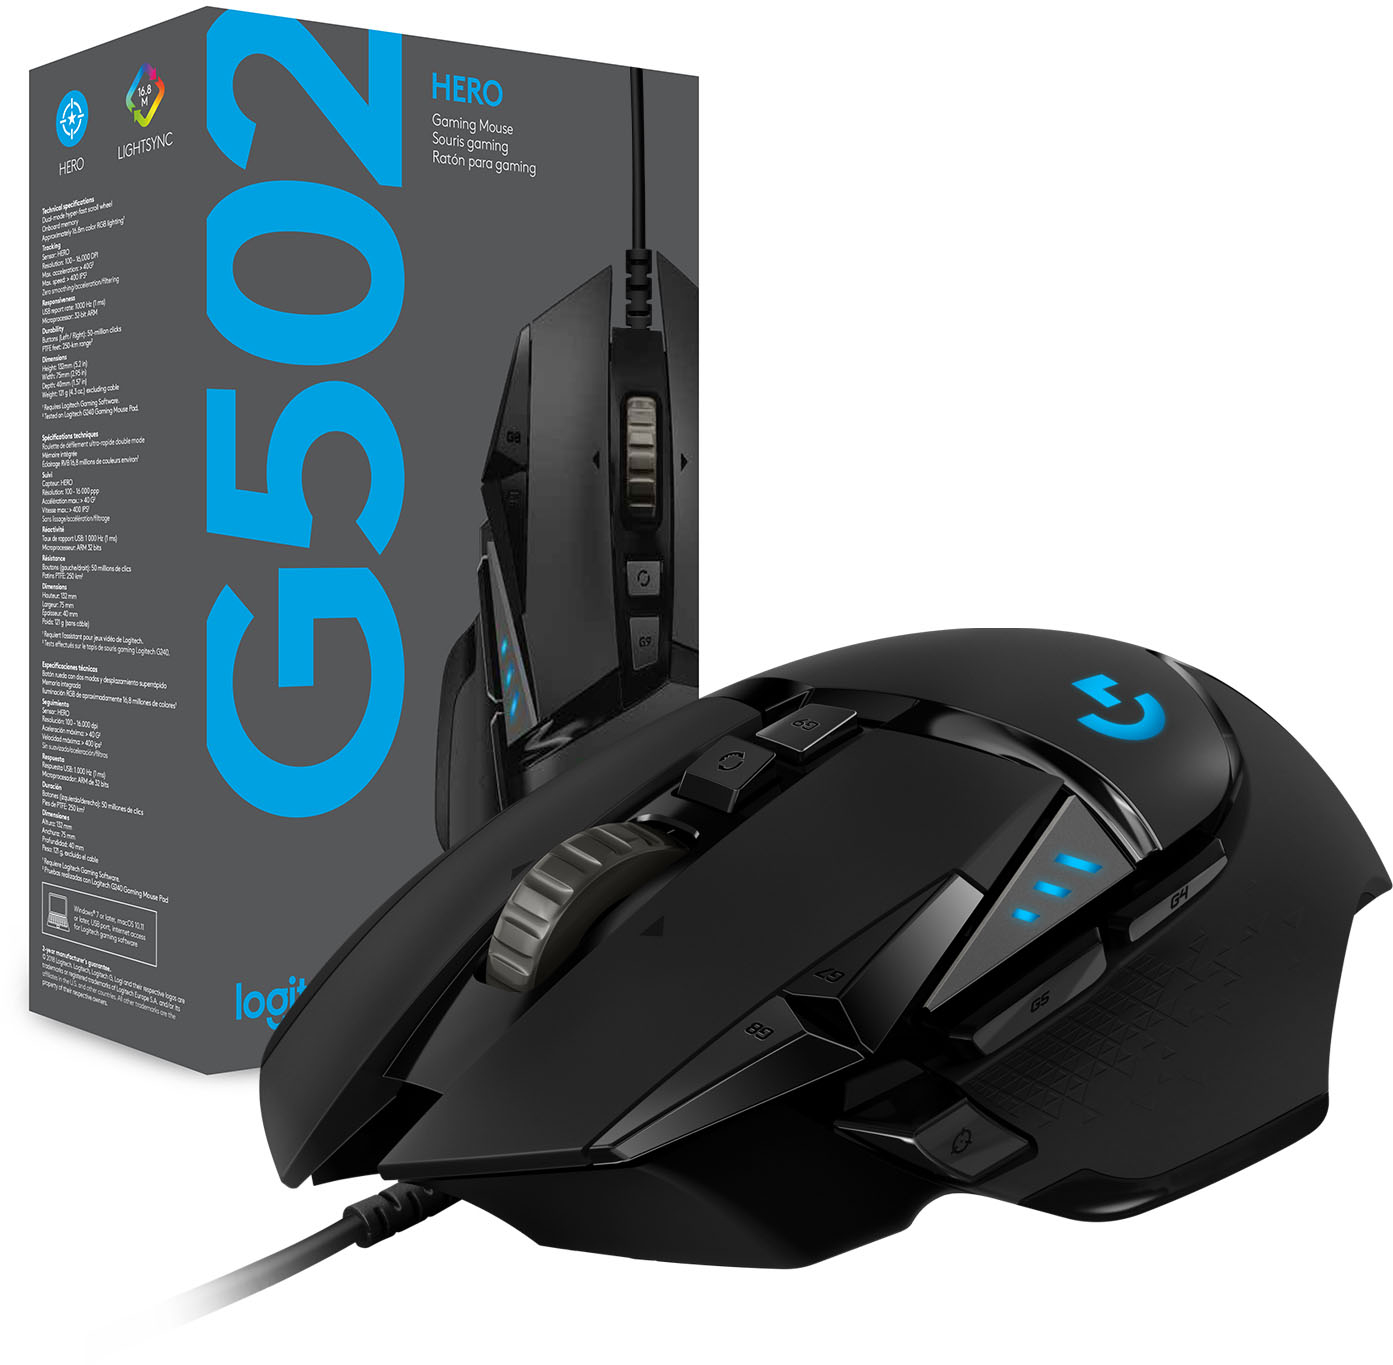 Logitech - G502 HERO Gaming Mouse (Black) - Free store pickup at Bestbuy $30